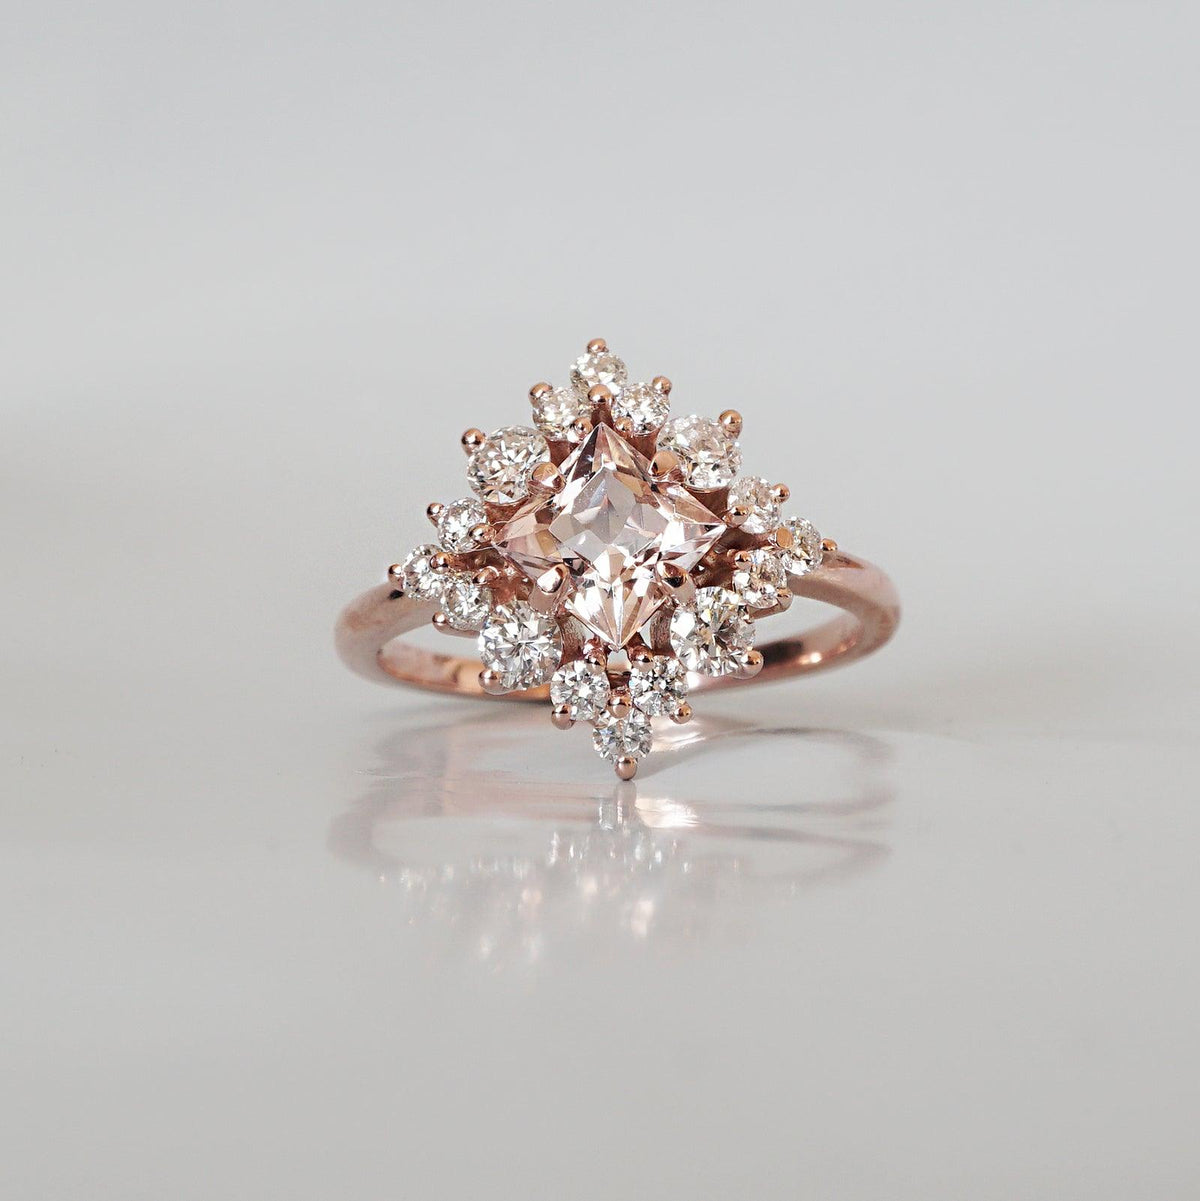 Aphrodite Morganite Diamond Ring in 14K and 18K Gold - Tippy Taste Jewelry